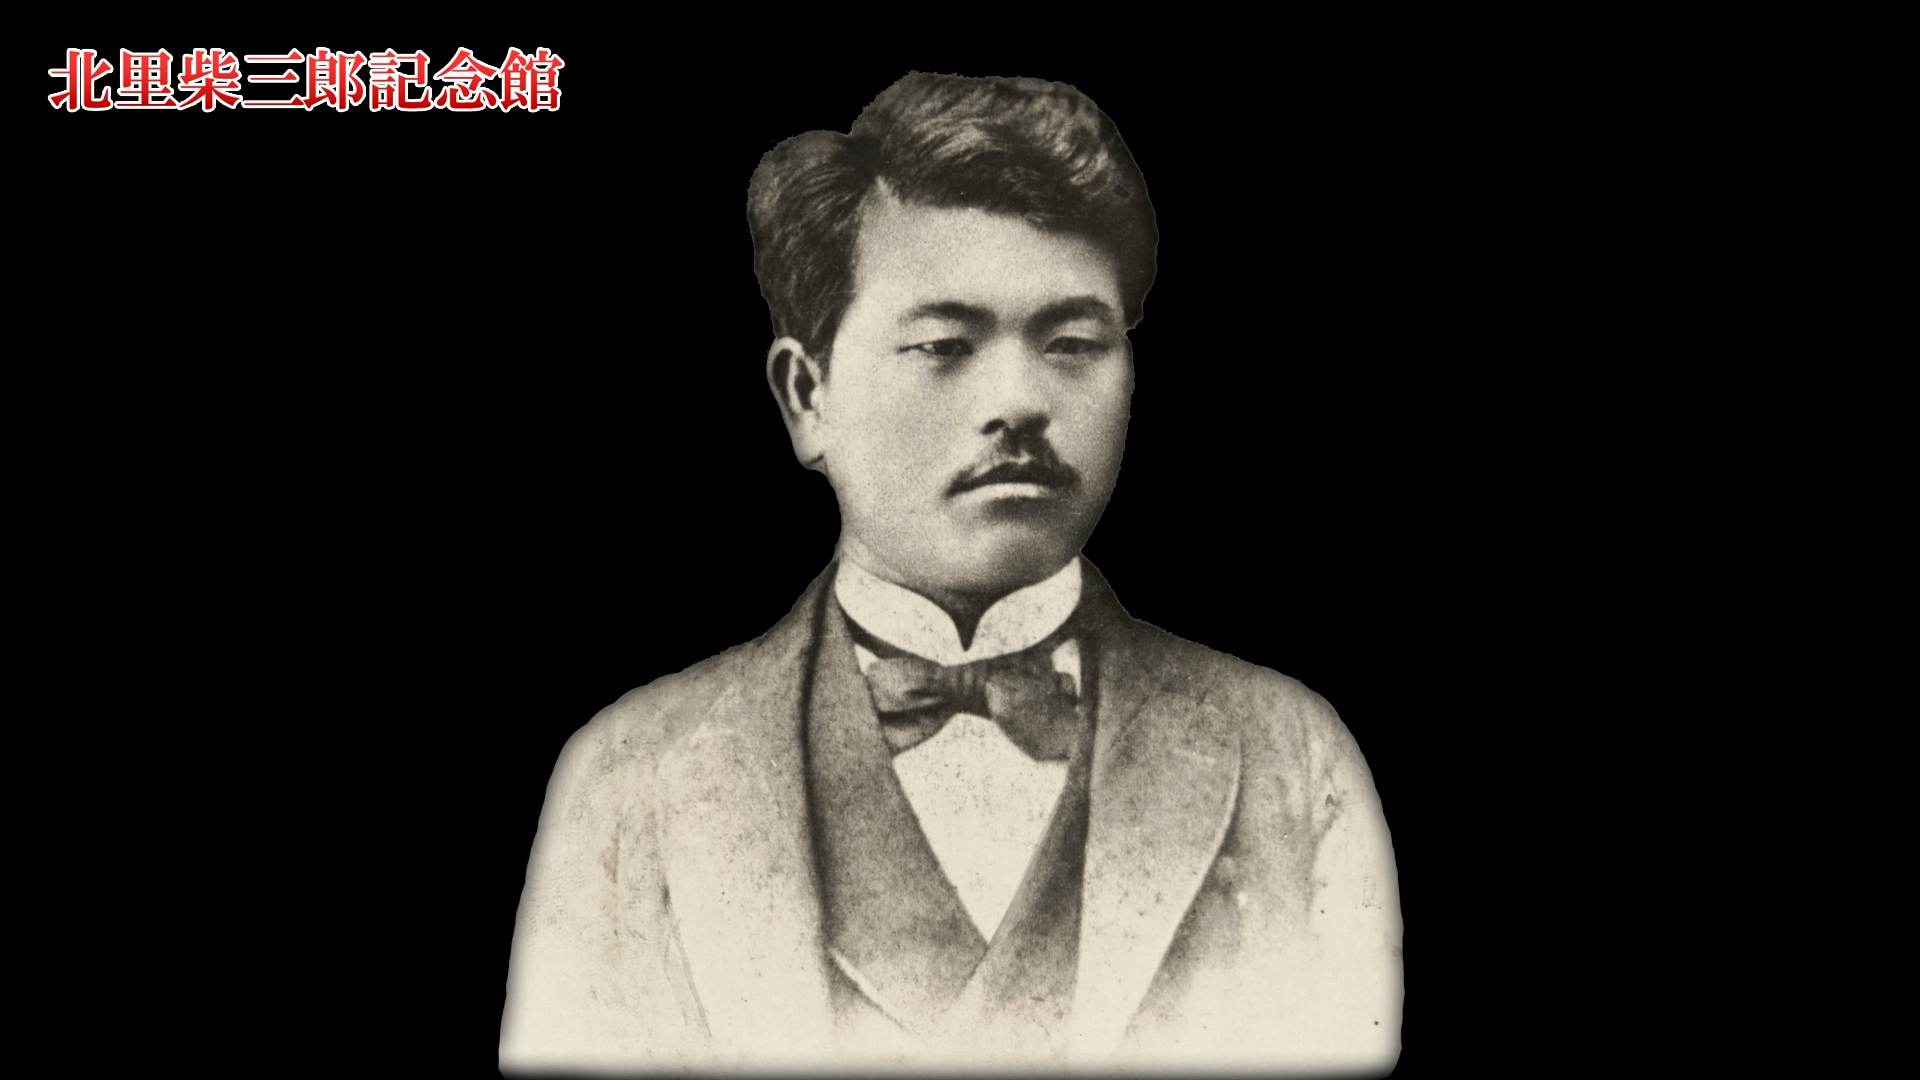 Chapter 3 – Dr. Kitazato Shibasaburo : Becoming the “Father of Japanese Modern Medicine”